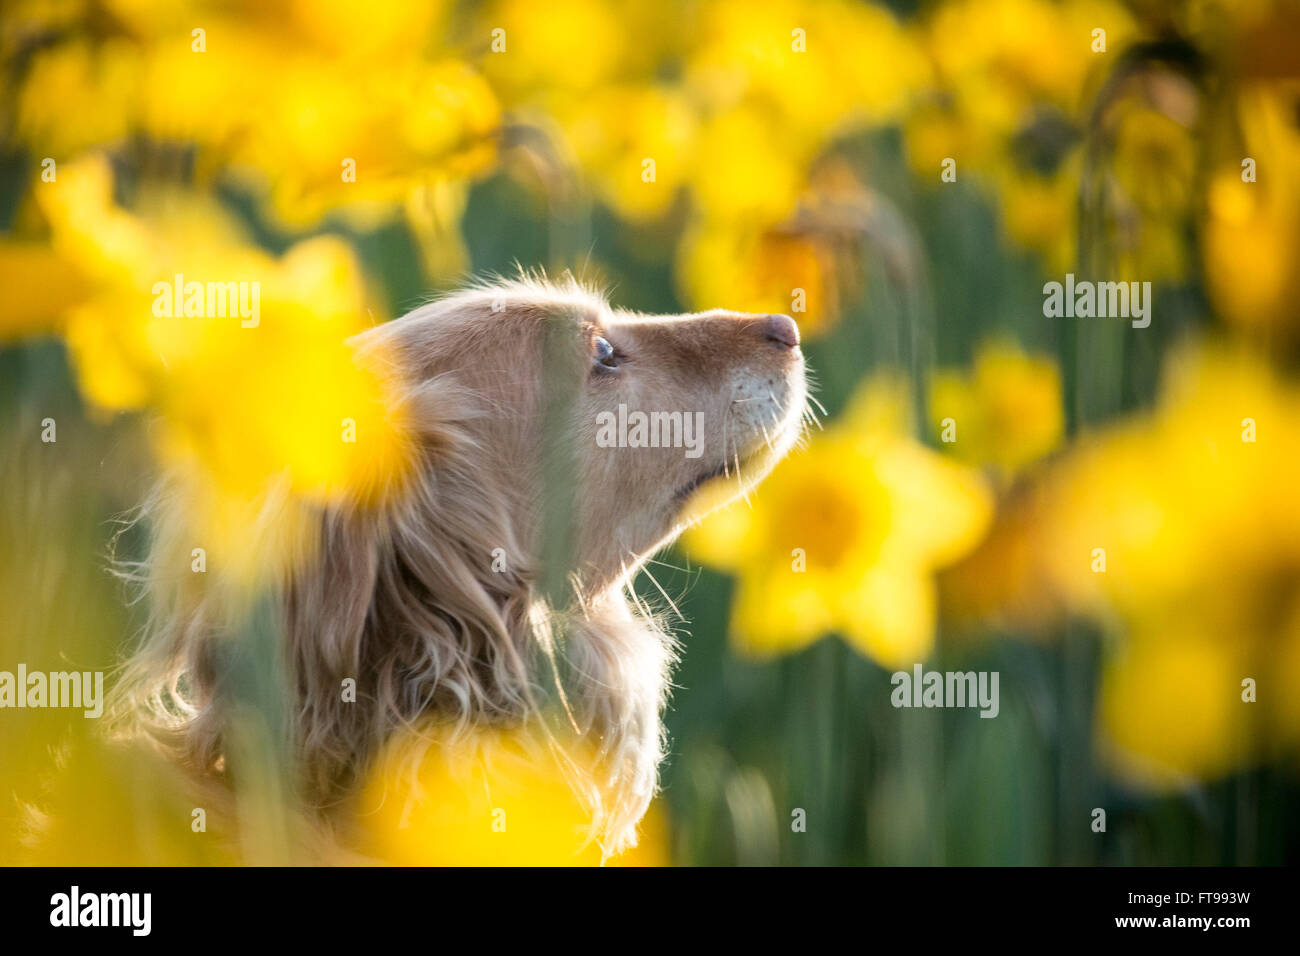 Londres, Reino Unido. 25 de marzo de 2016. El clima del REINO UNIDO: Primavera narciso flores en St. James's Park visto en la luz del sol de la tarde: Guy Corbishley de crédito/Alamy Live News Foto de stock